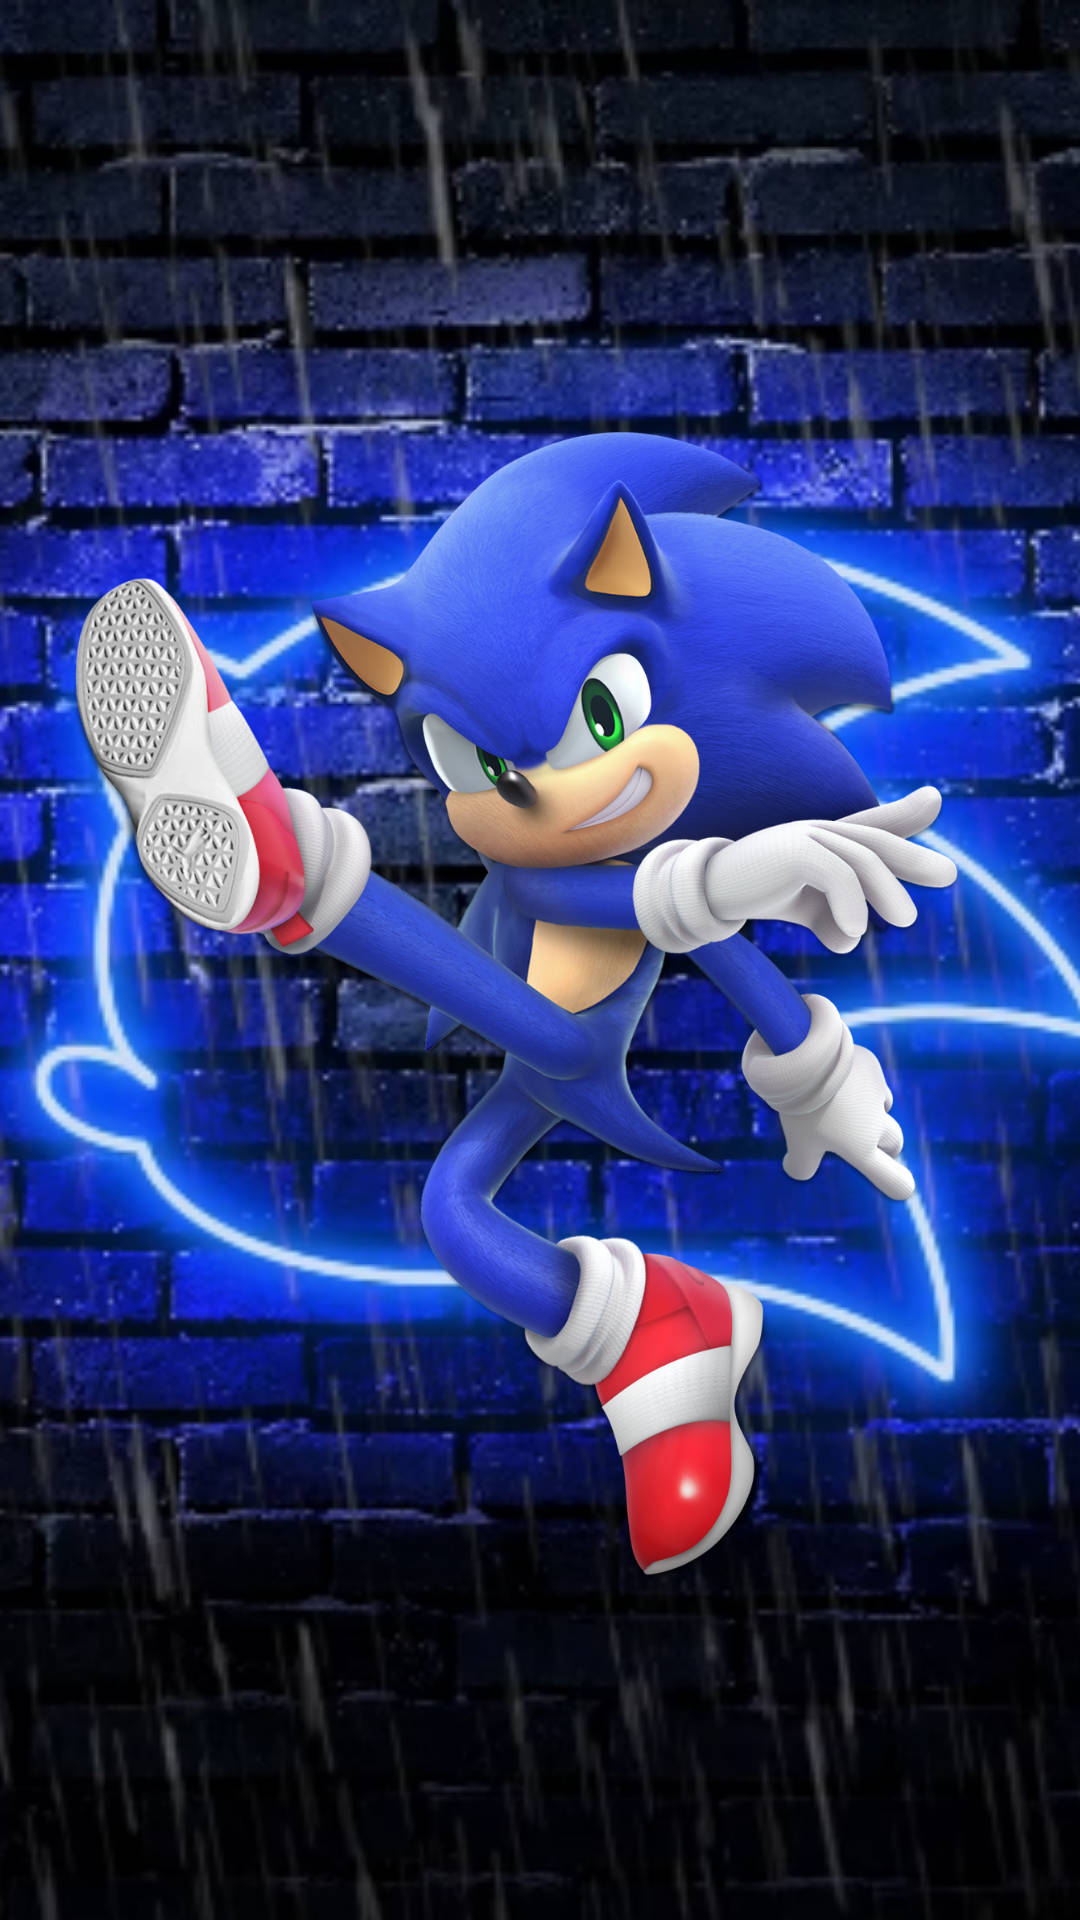 Beschleunigeund Besiege Die Konkurrenz Mit Der Cool Sonic Technologie! Wallpaper